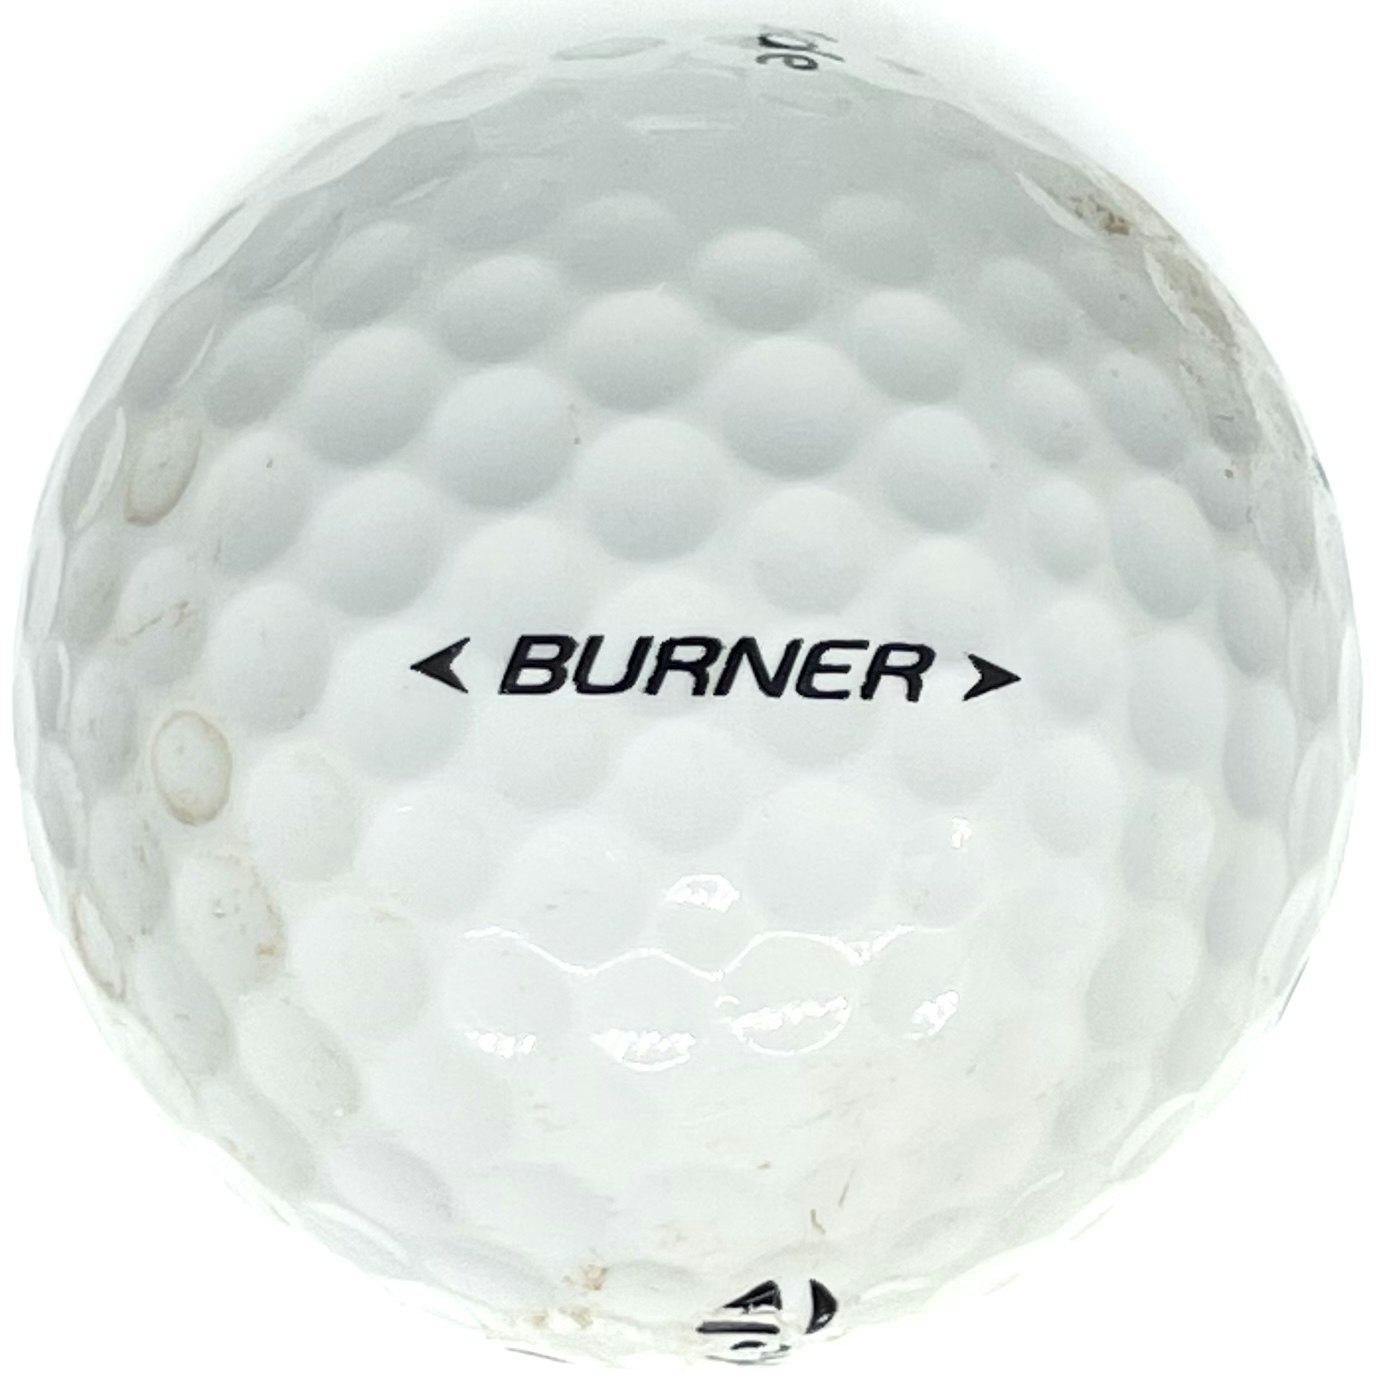 Detta är en vit golfboll, Taylormade Burner